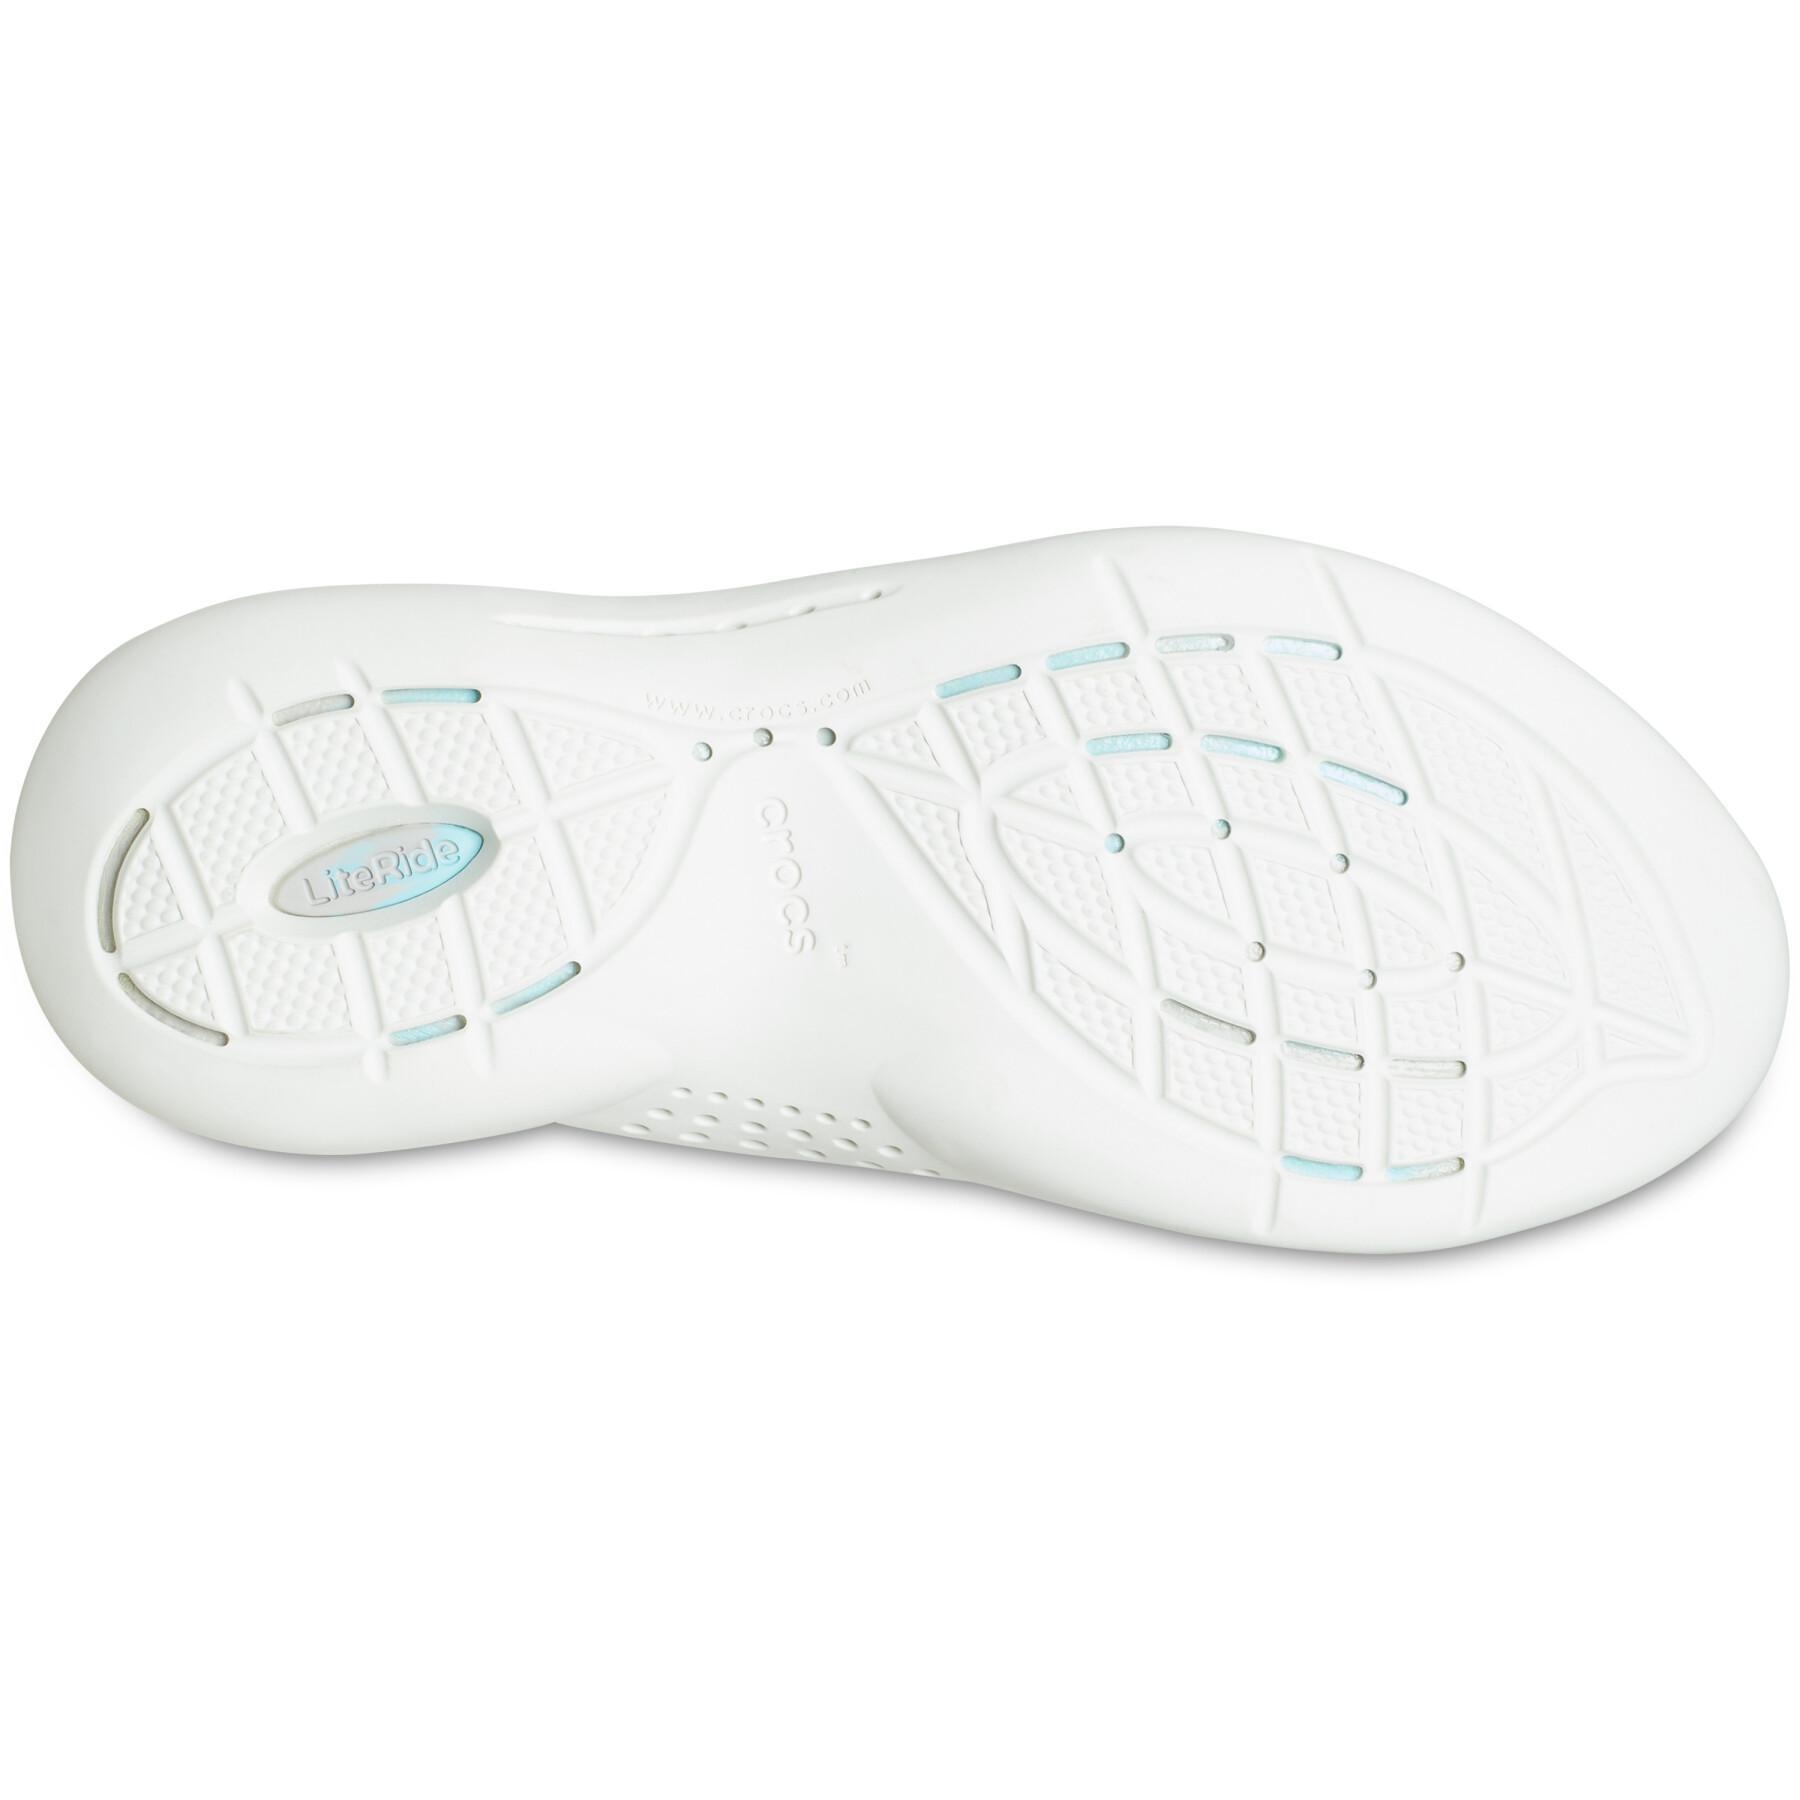 Zapatillas de deporte para mujeres Crocs literide 360 marbled pacer